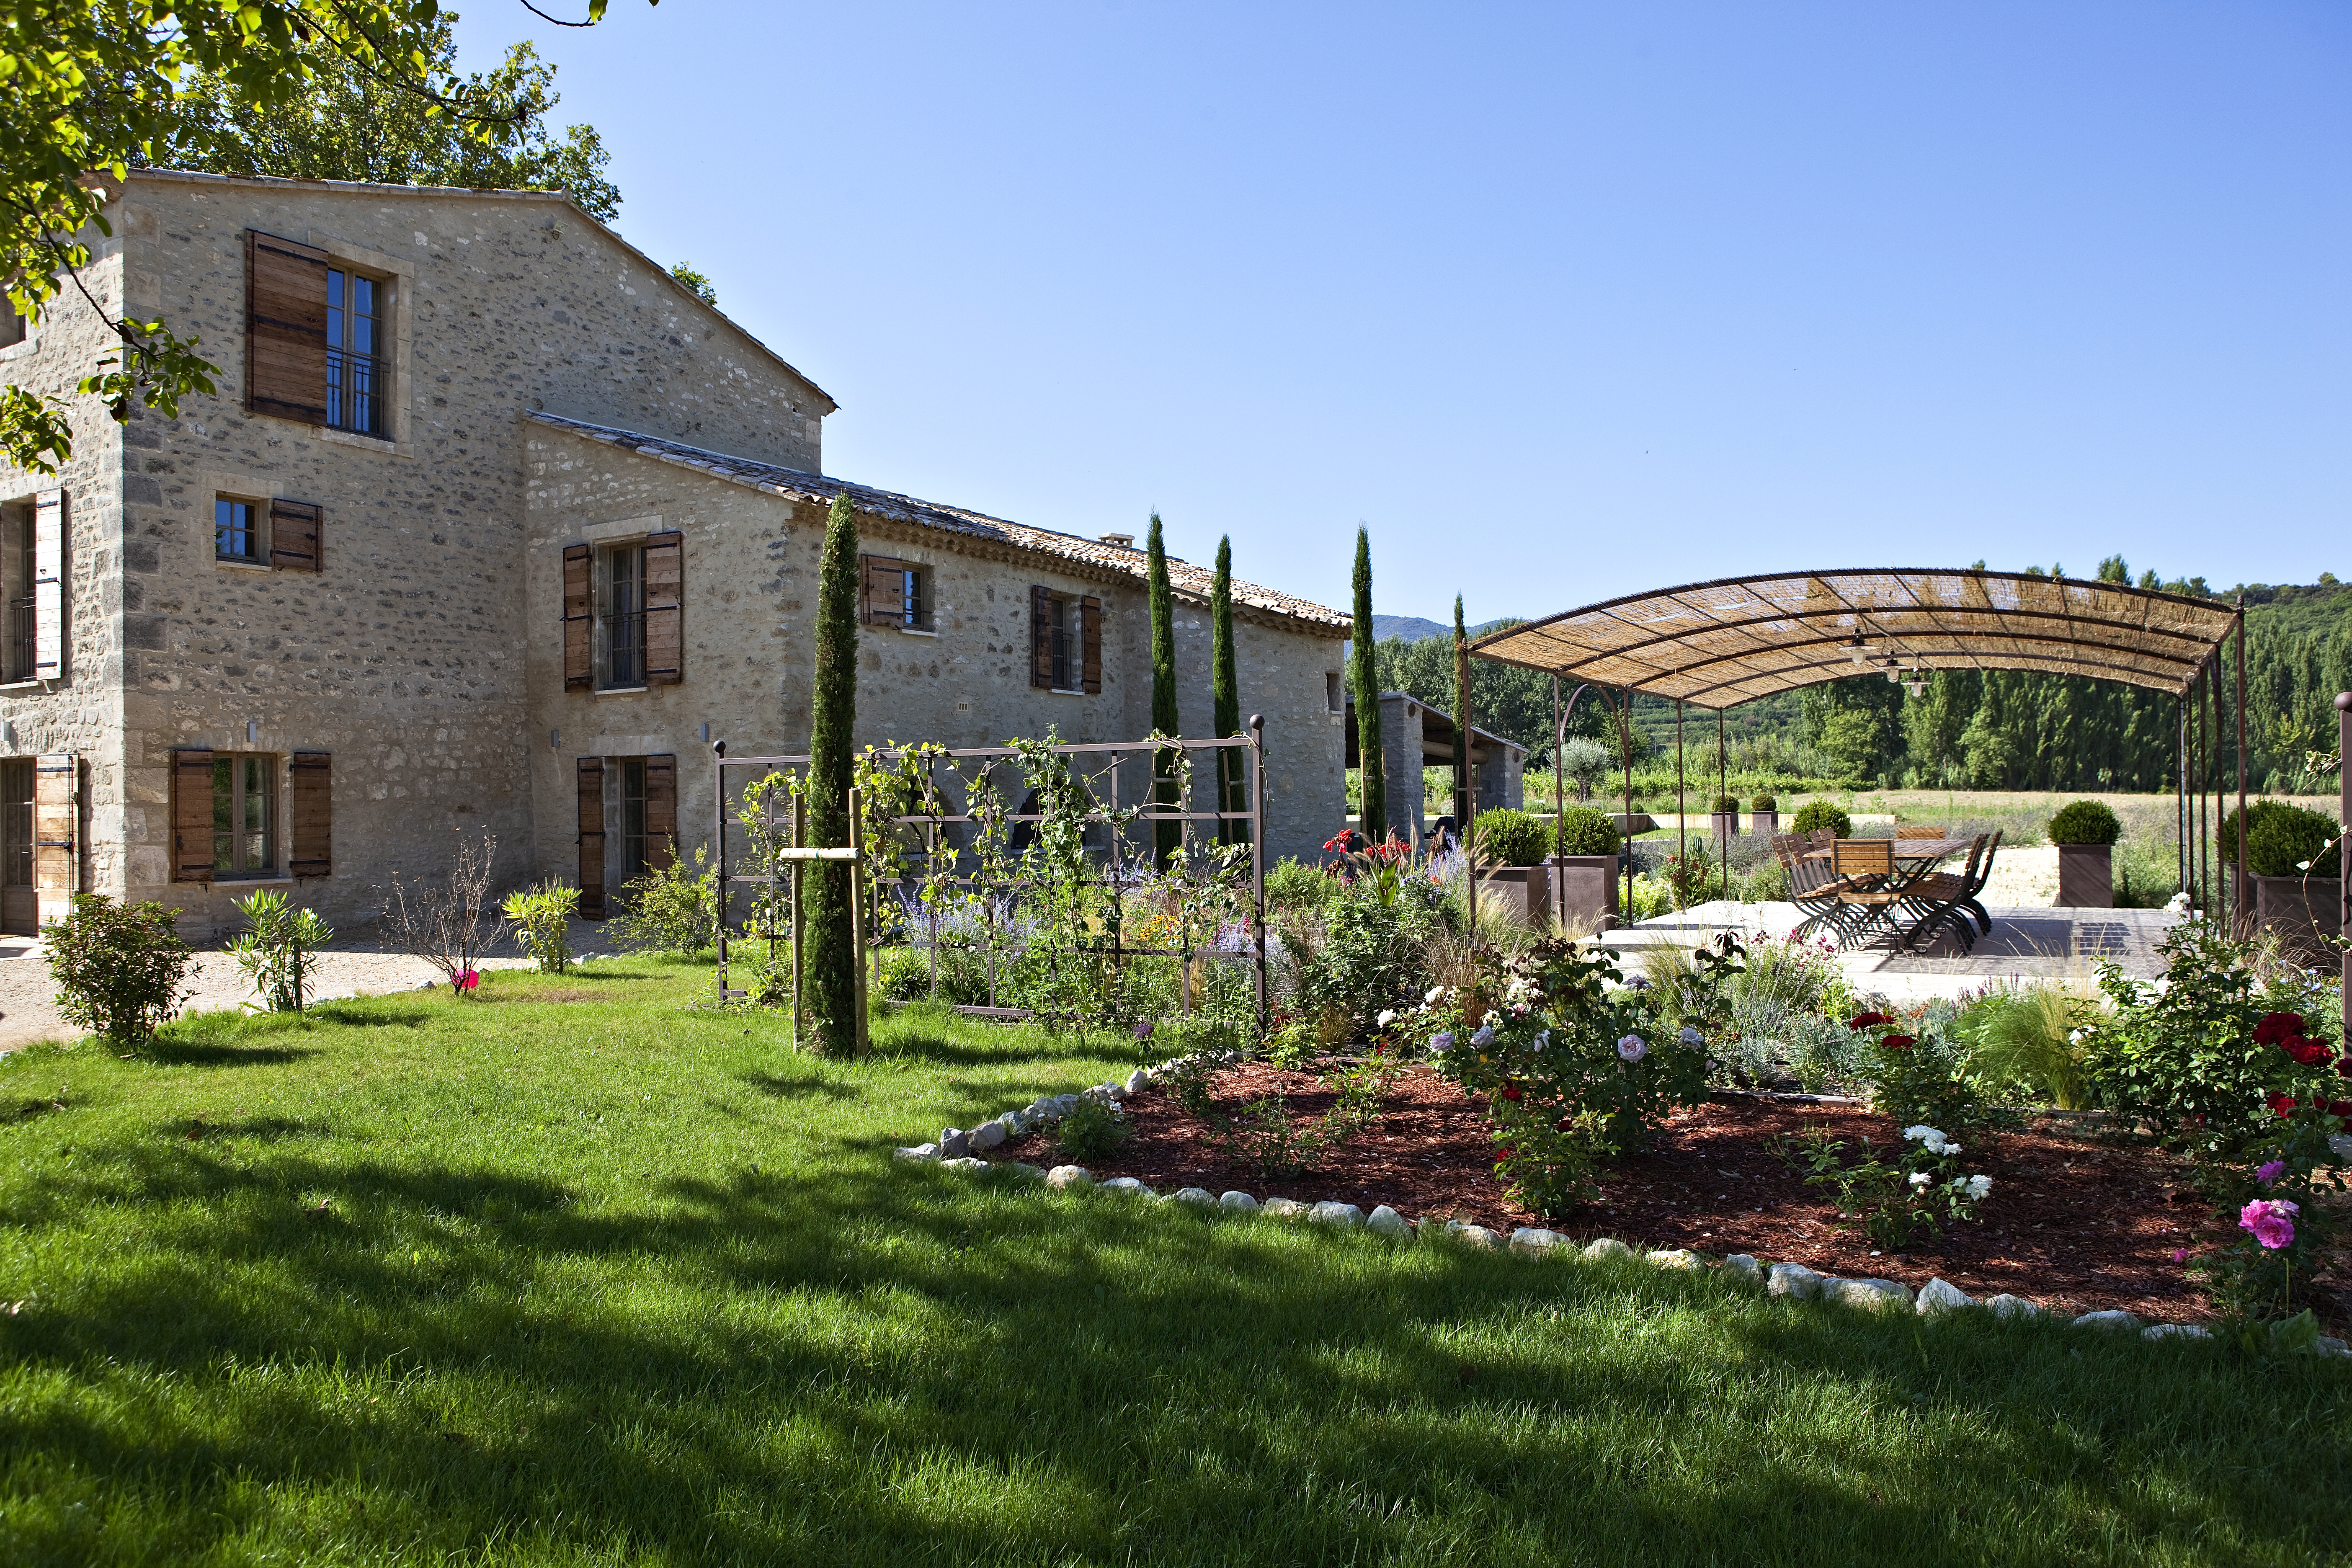 a view of the facade and garden of the villa